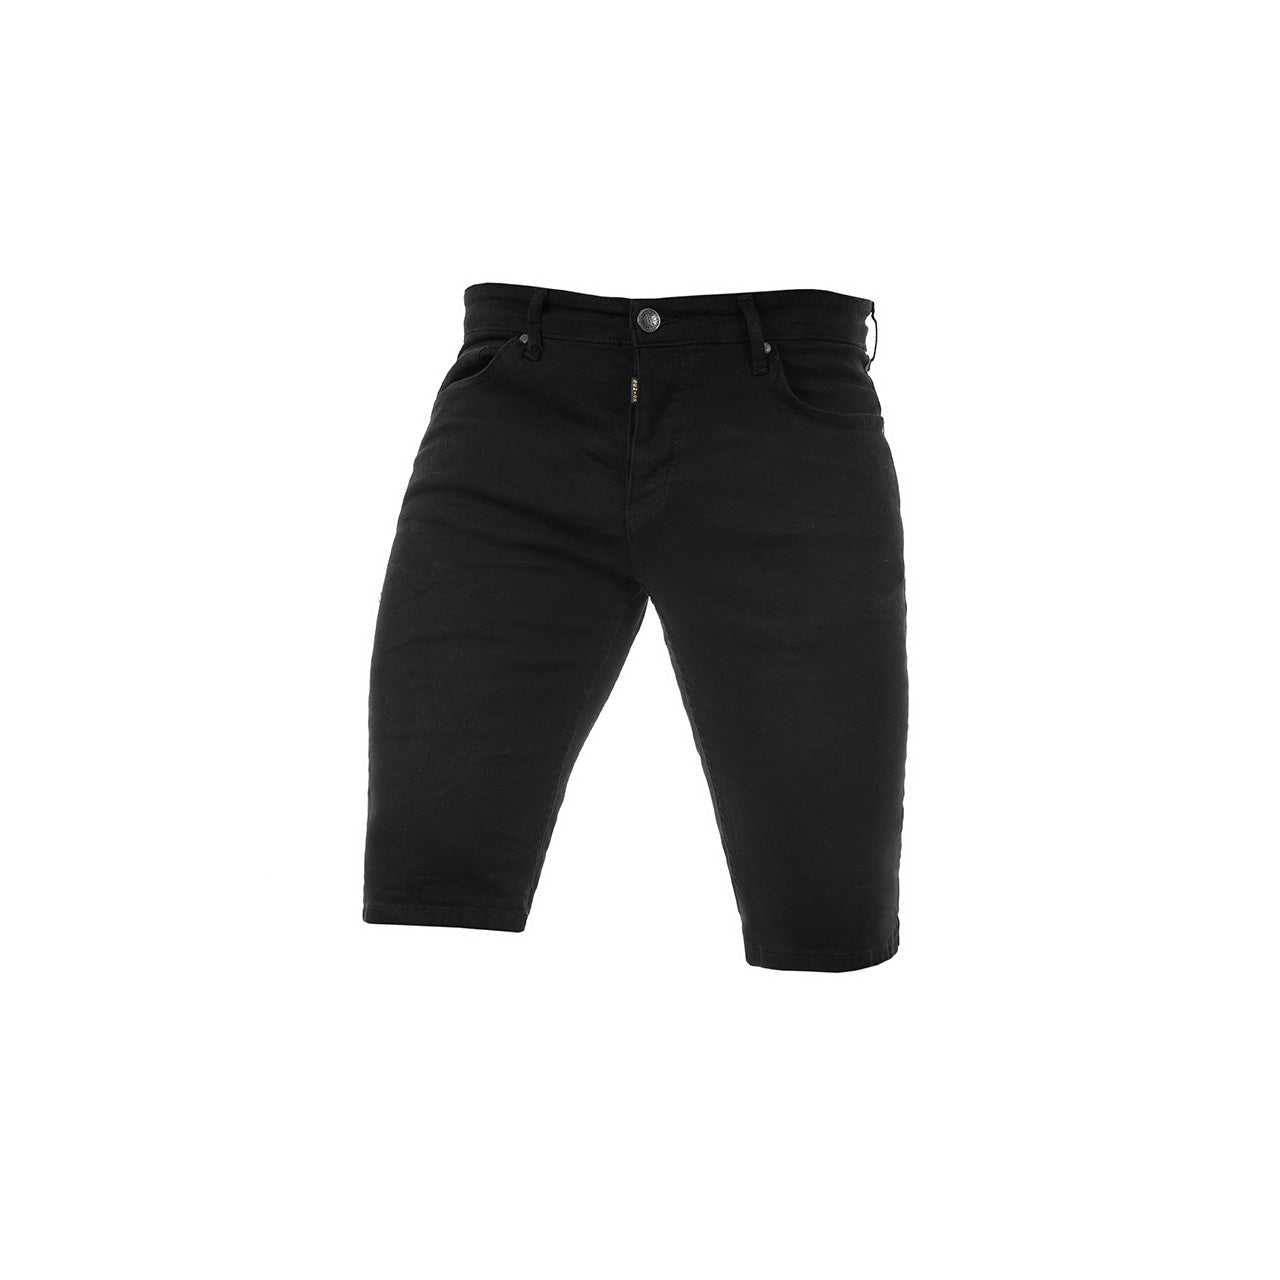 Ανδρική Βερμούδα Jeans Senior Μαύρη (3293) - Panda Clothing